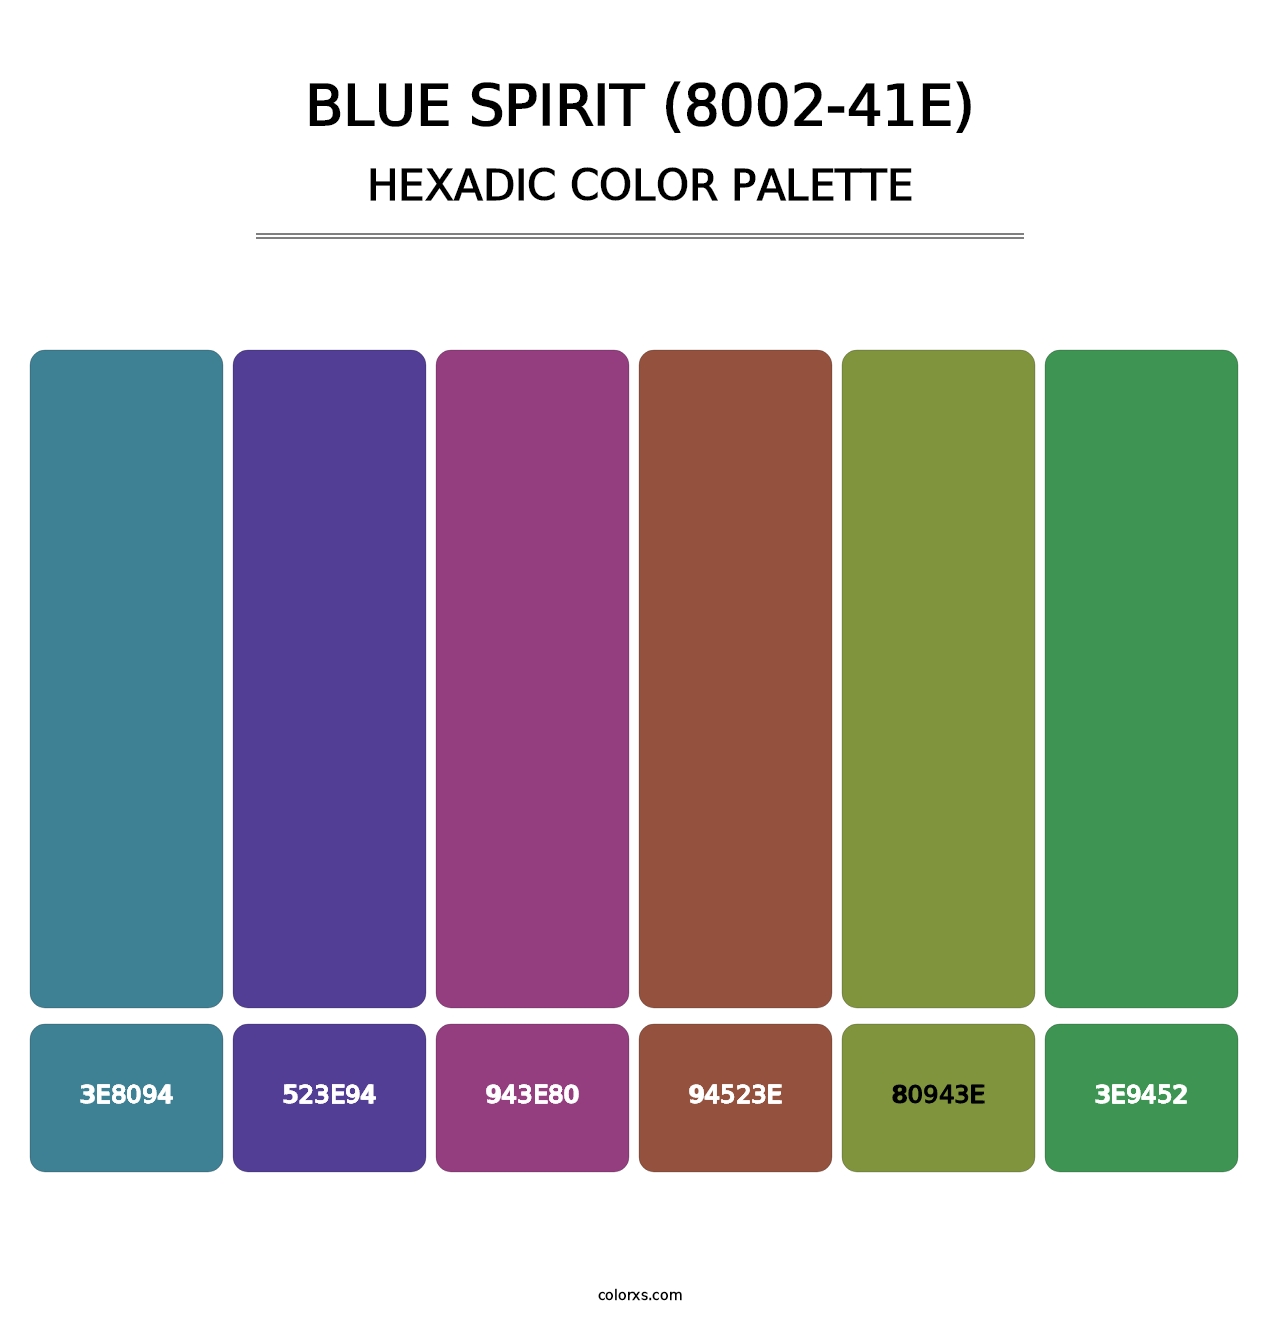 Blue Spirit (8002-41E) - Hexadic Color Palette